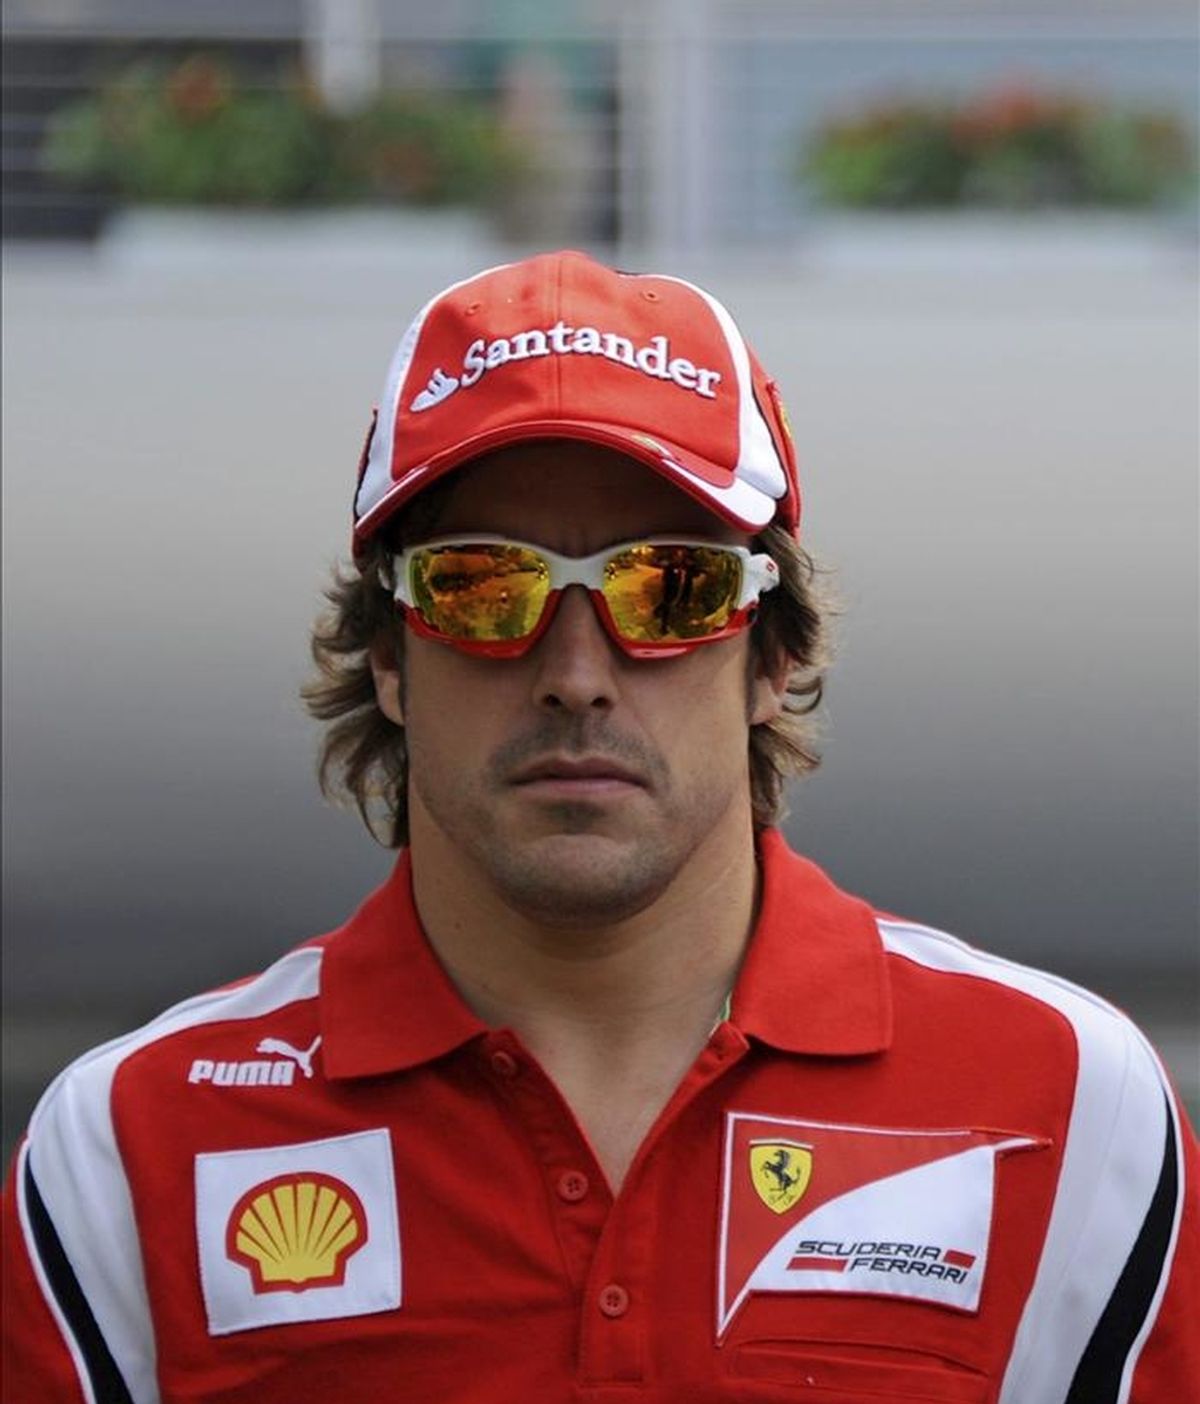 El piloto español de Fórmula Uno, Fernando Alonso (Ferrari), camina por el circuito internacional de Shanghai, China. El Gran Premio de China se disputa este fin de semana. EFE